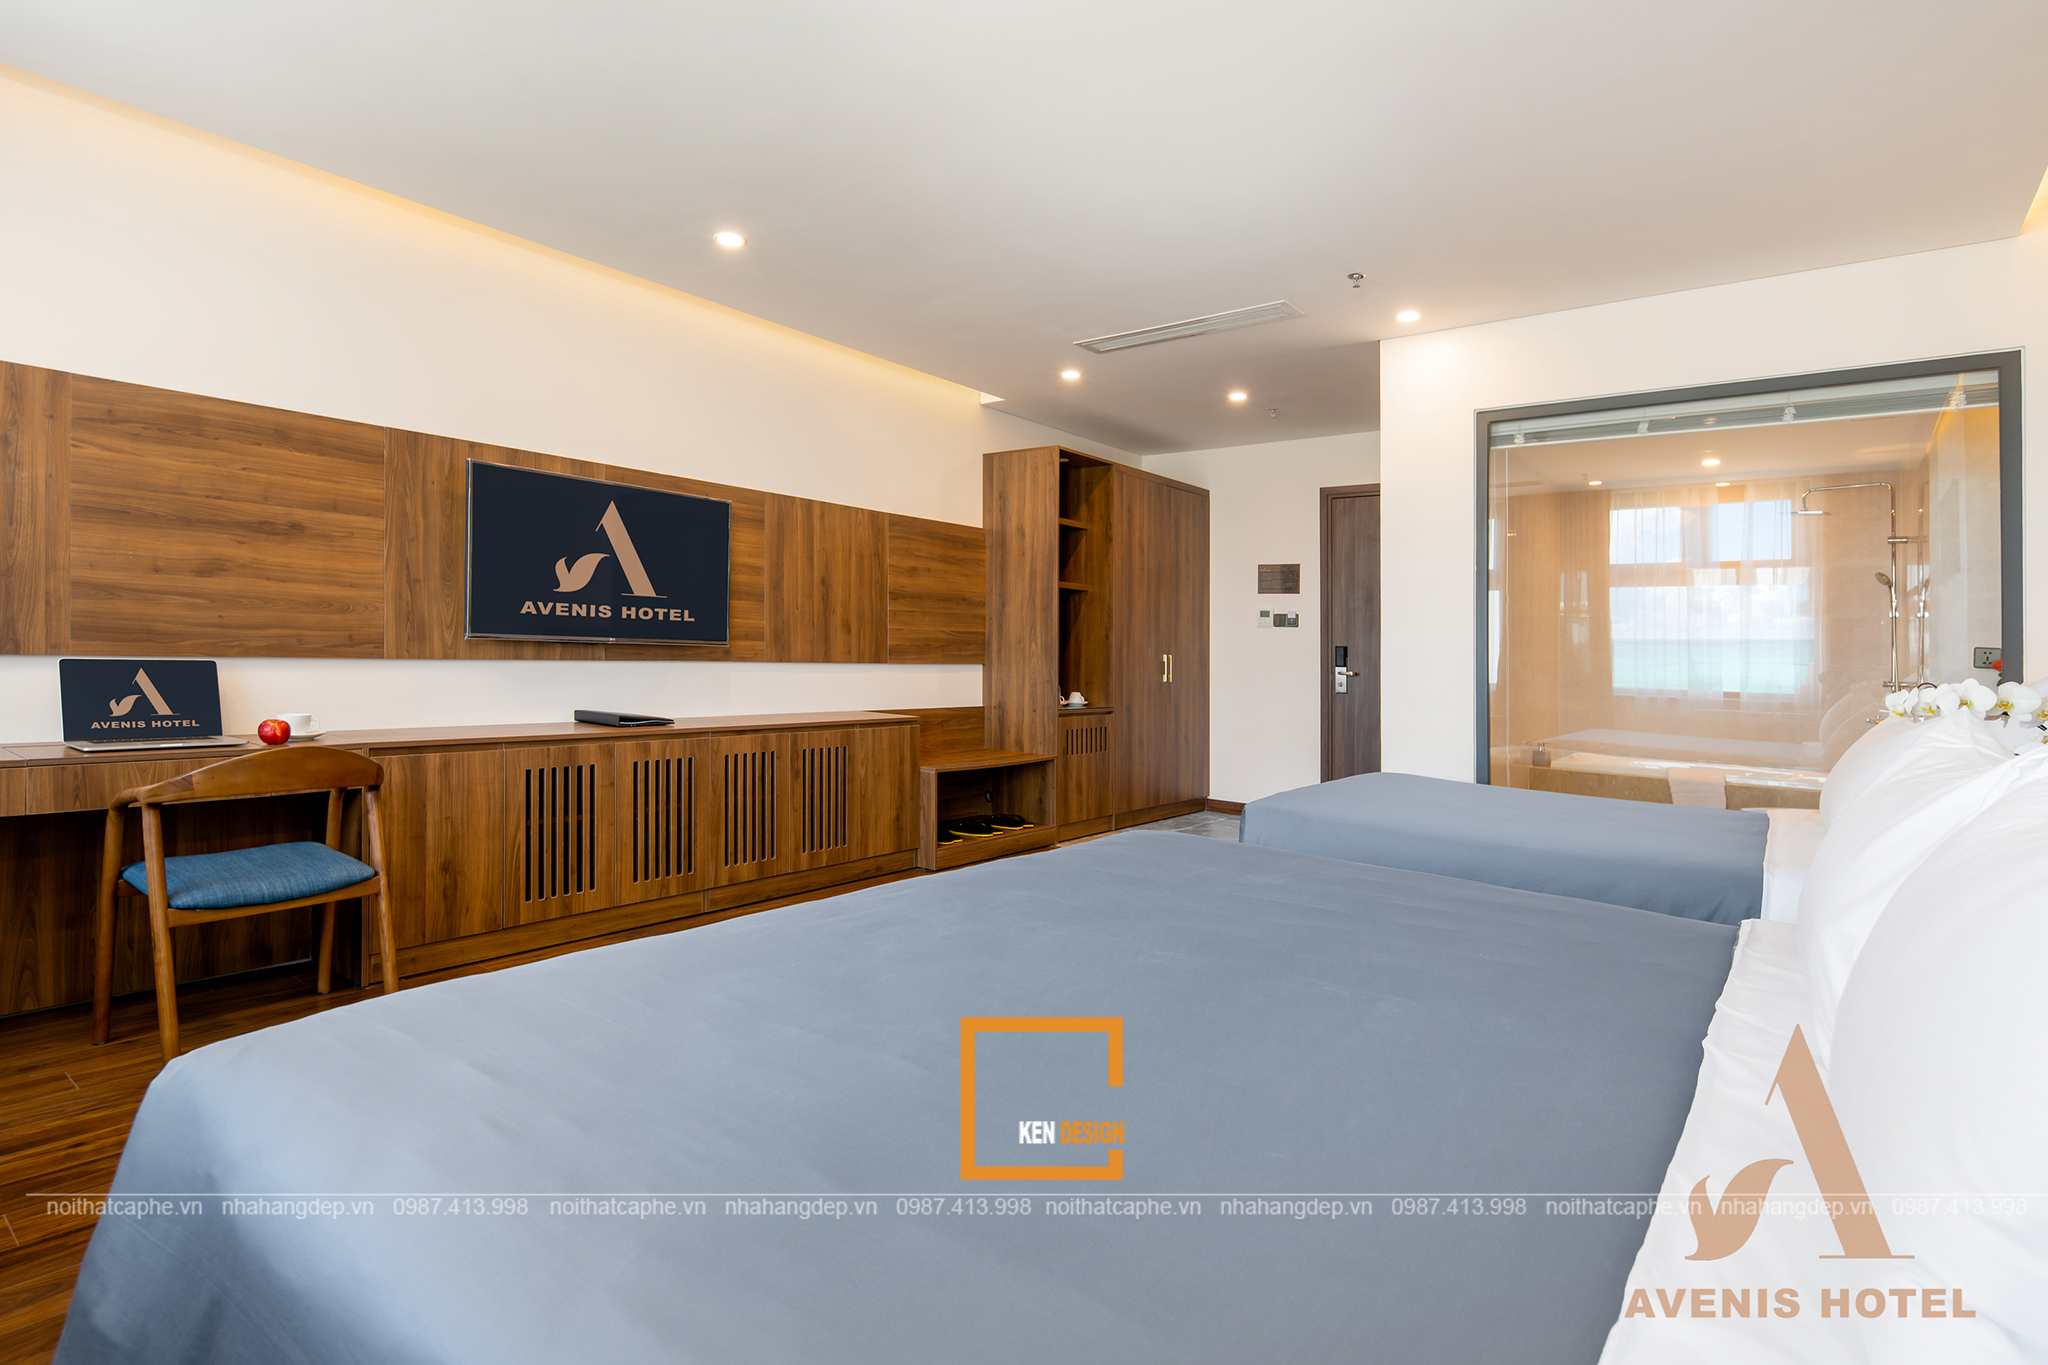 Design of Avenis hotel